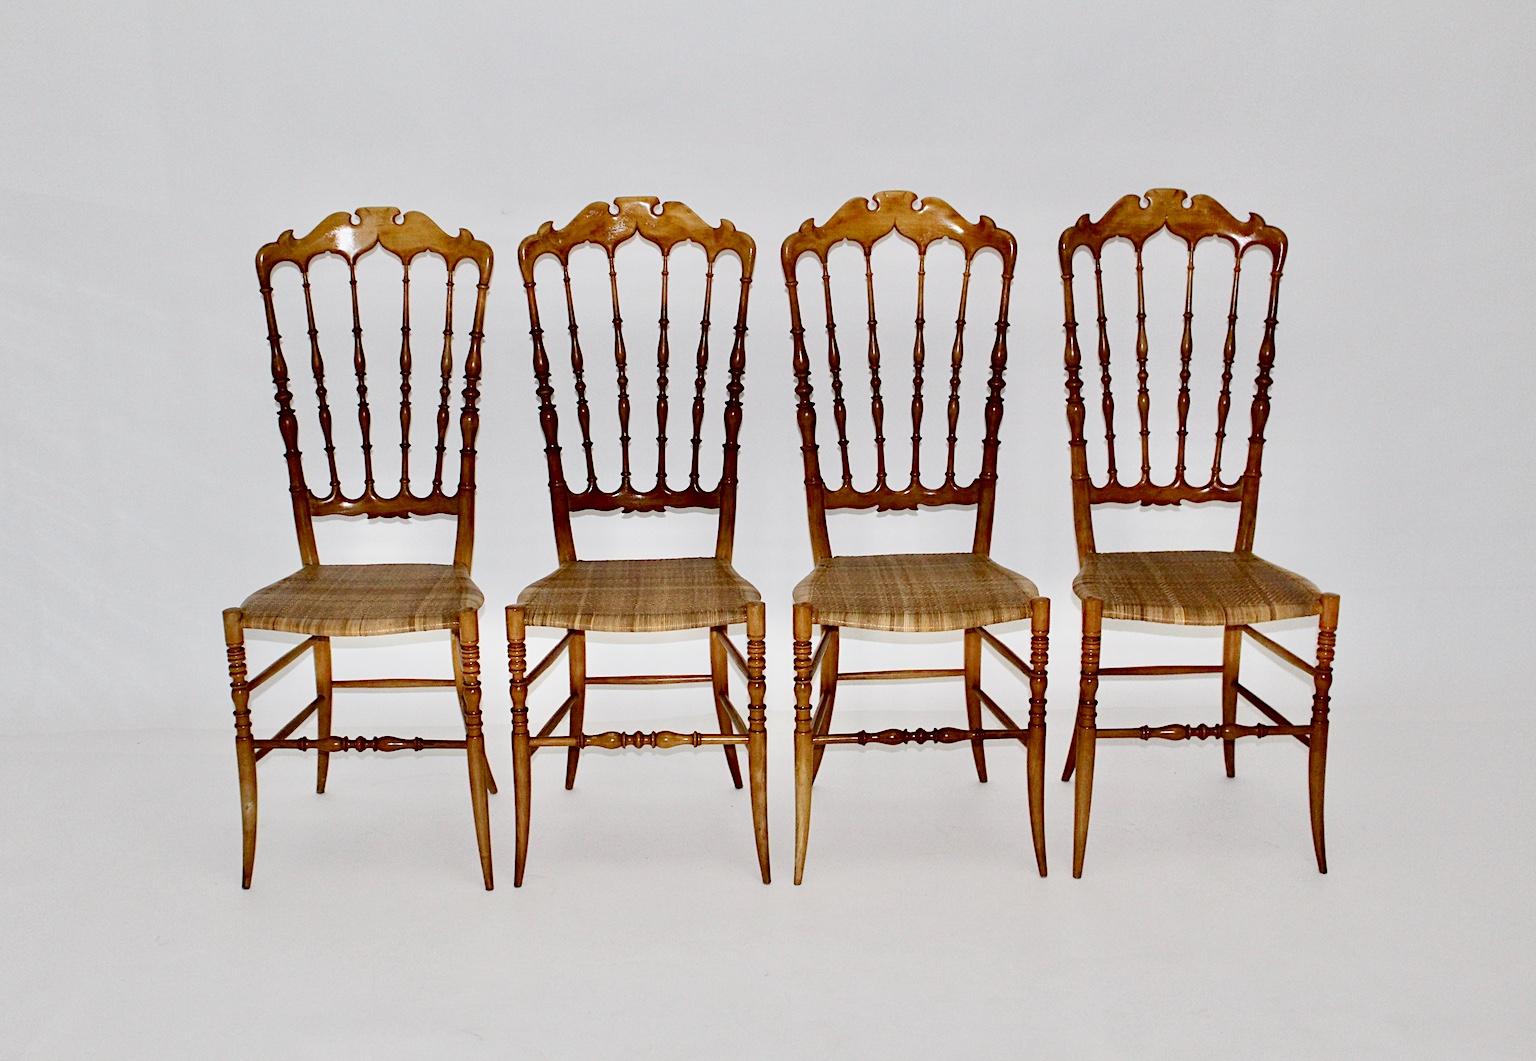 Set de 4 chaises de salle à manger en hêtre avec un haut dossier, fait à la main en Italie par Chiavari, années 1950.
Les quatre chaises de salle à manger sont dotées d'un cadre tourné laqué naturel en hêtre massif et d'une assise en rotin fabriquée